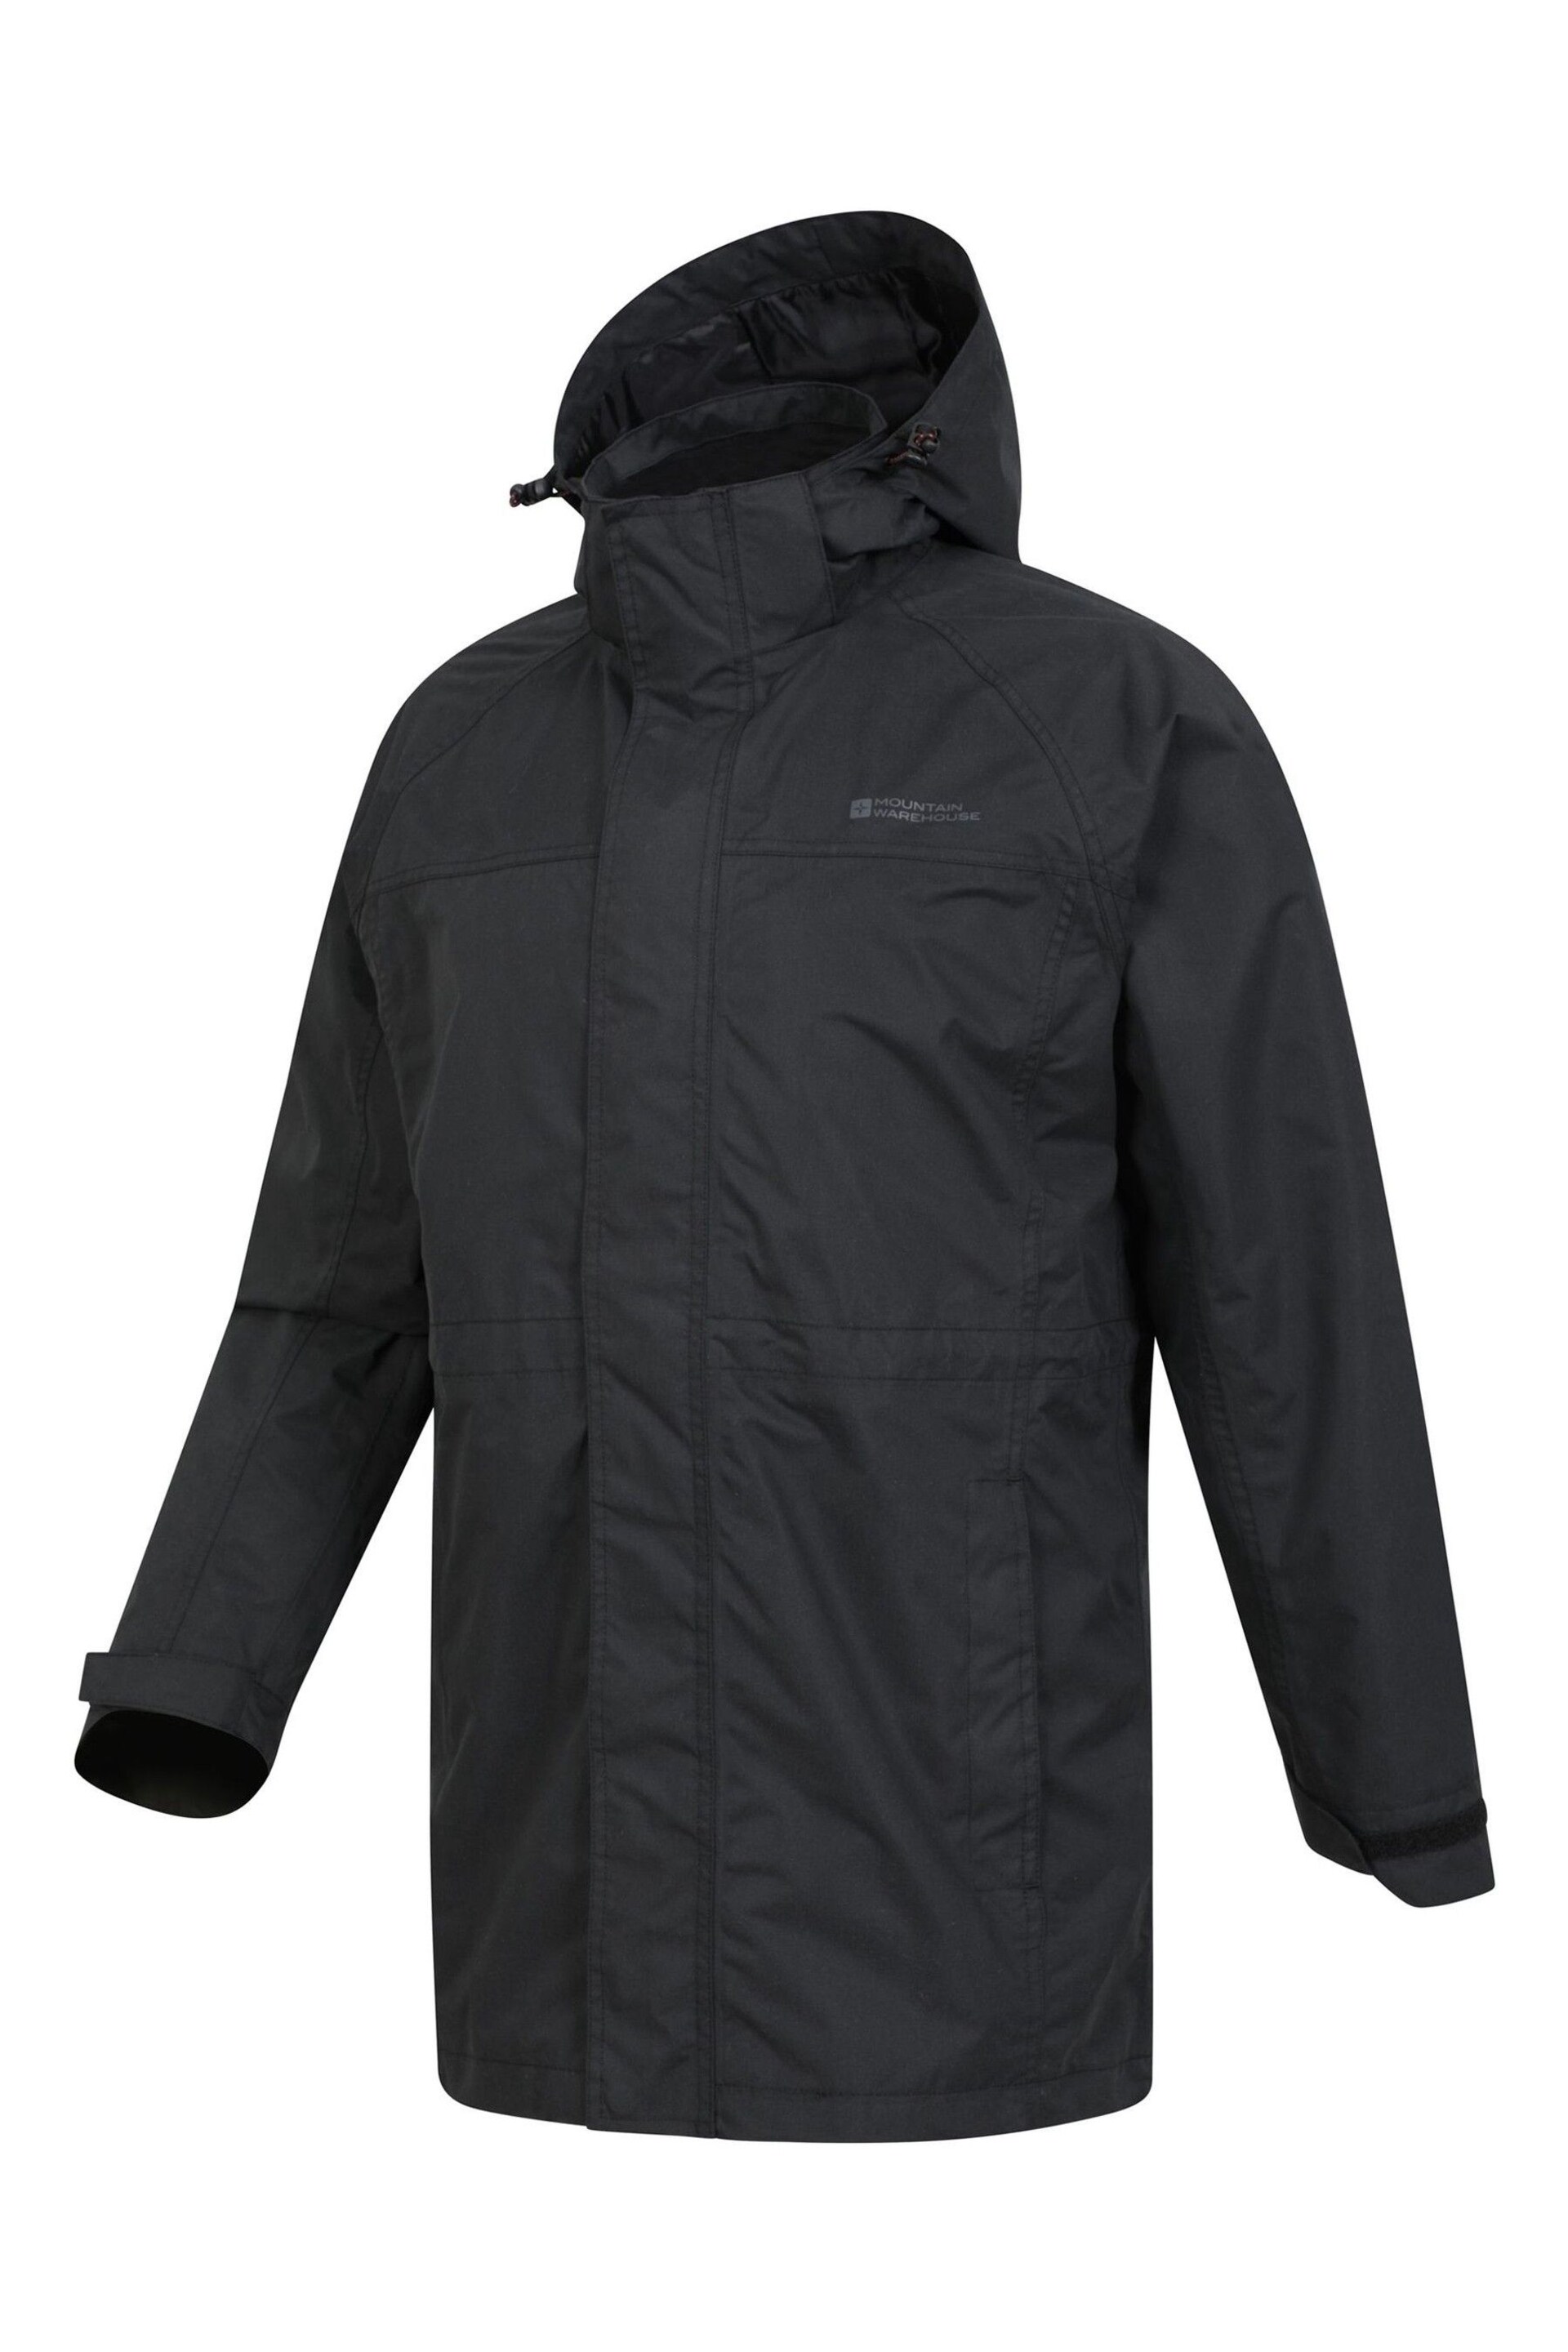 Mountain Warehouse Black Mens Westport Long Waterproof Jacket - Image 4 of 5